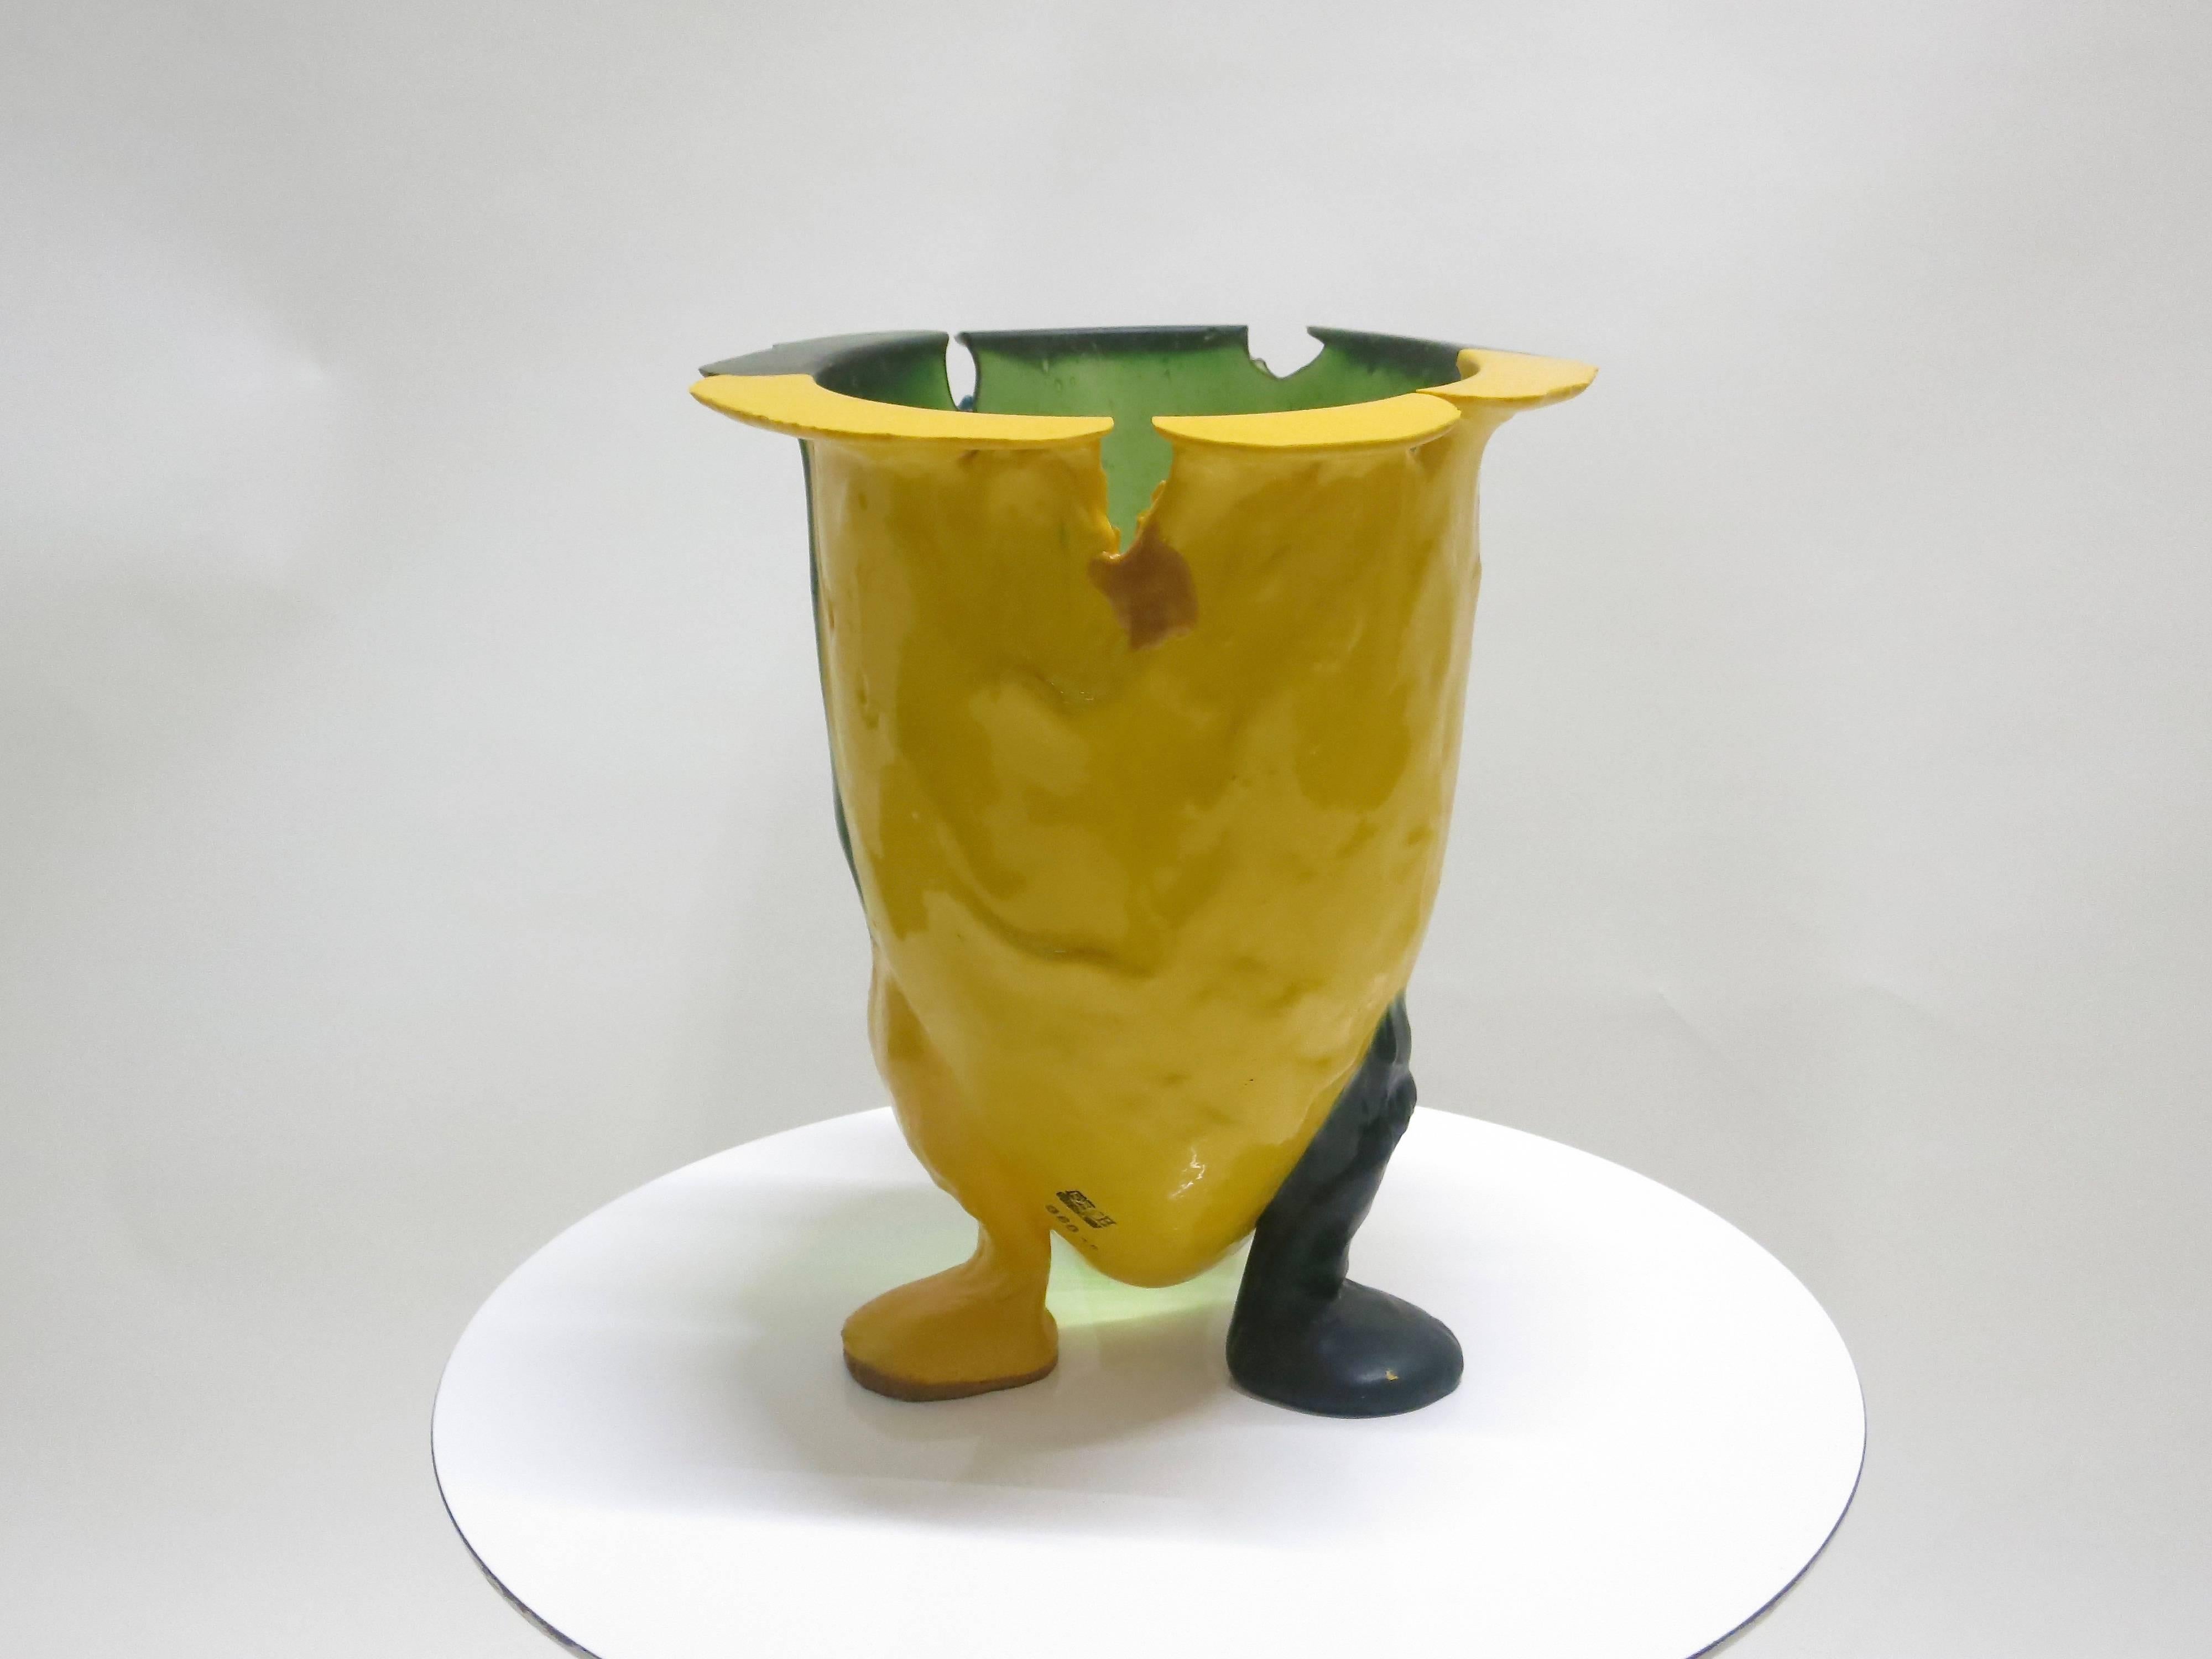 Résine molle jaune et verte brillante. Les couleurs se mélangent pour former un fabuleux exemple de  Vase Amazonia de Gaetano Pesce. Motif de poisson estampé. Acheté à l'artiste dans les années 1990. Propriétaire unique, toutes les informations sont